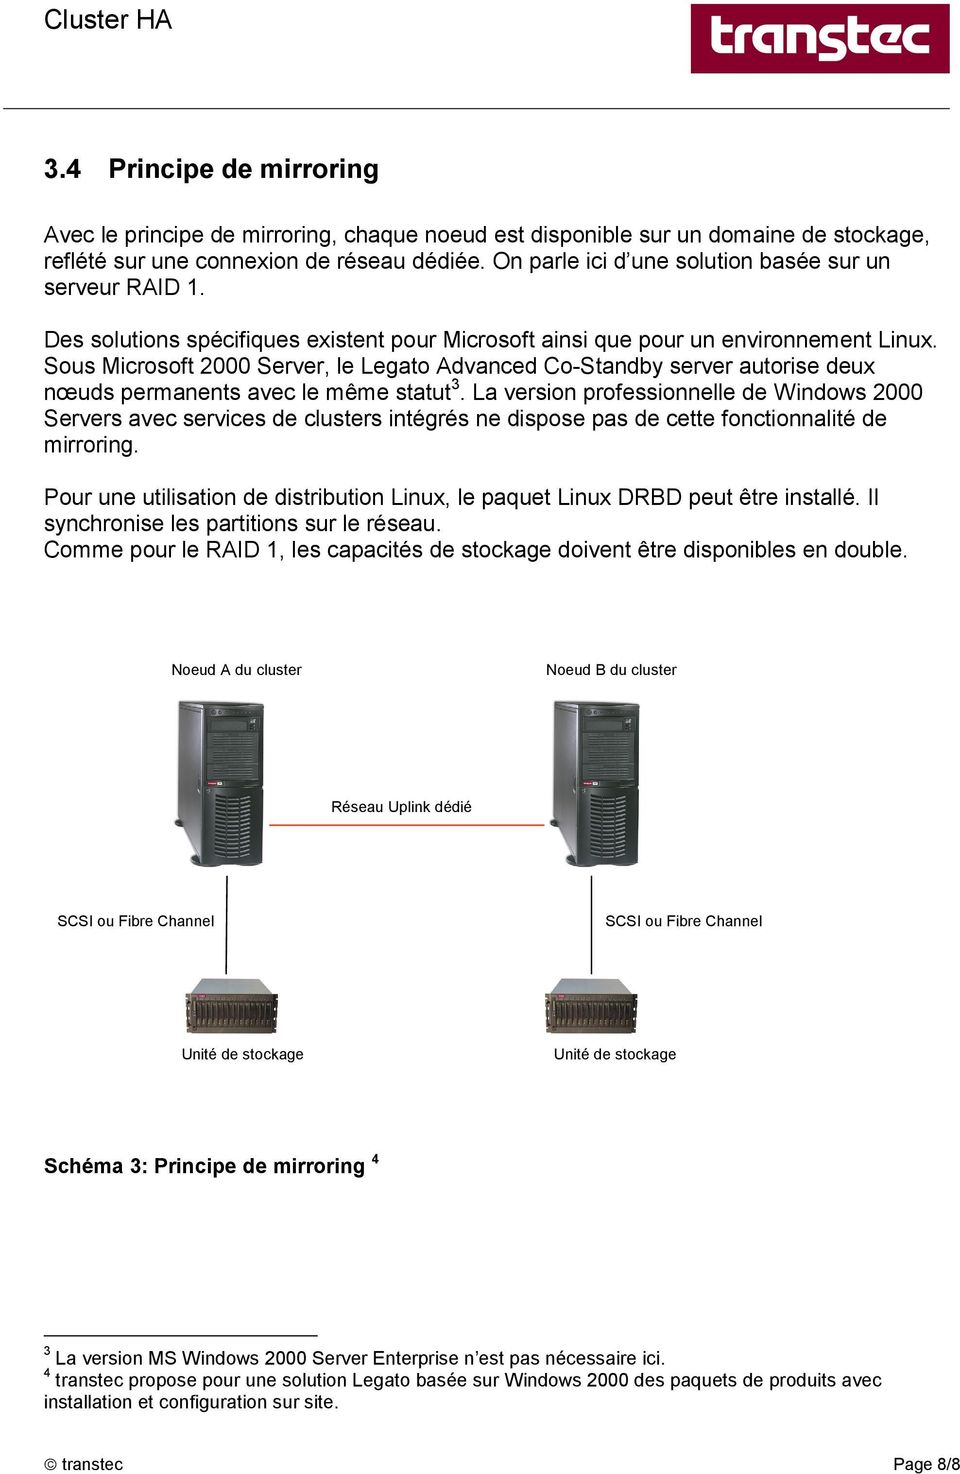 Sous Microsoft 2000 Server, le Legato Advanced Co-Standby server autorise deux nœuds permanents avec le même statut 3.